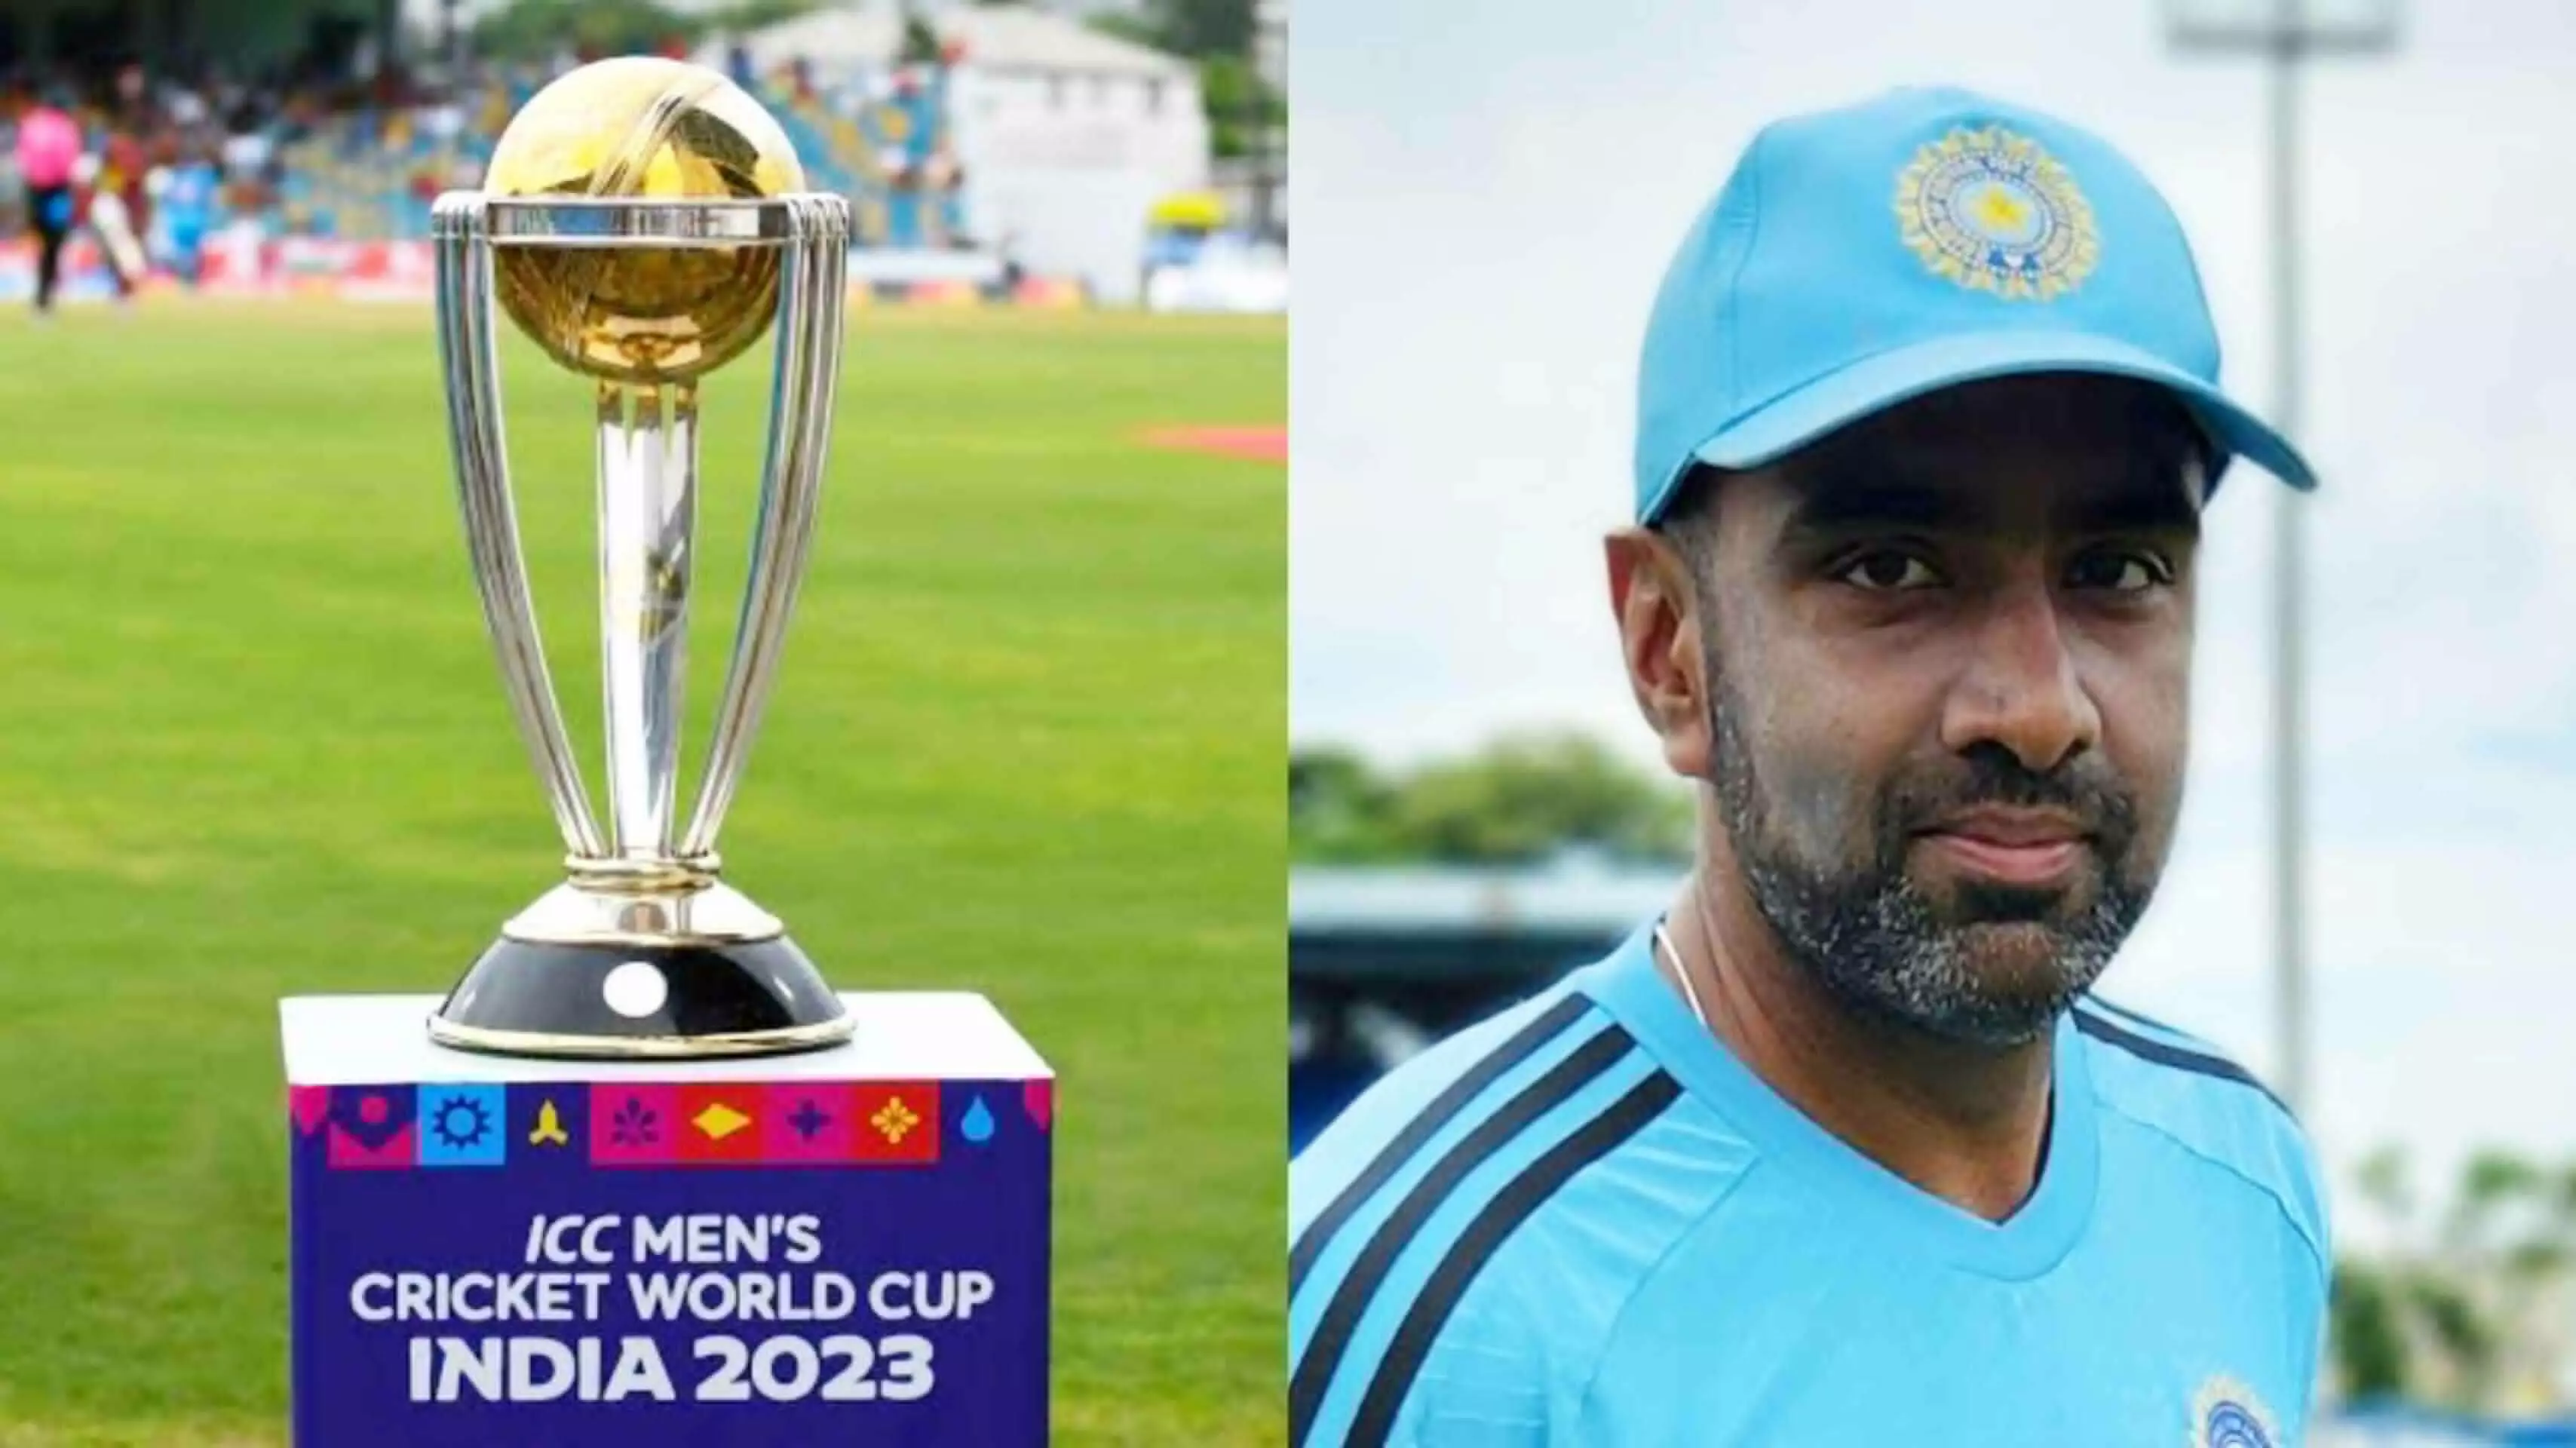 ICC World Cup 2023 Team India: अक्षर चोट के कारण टीम से बाहर, क्यों रखा गया अश्विन को, कैसा है उनका मौजूदा फॉर्म यहां पढ़े...